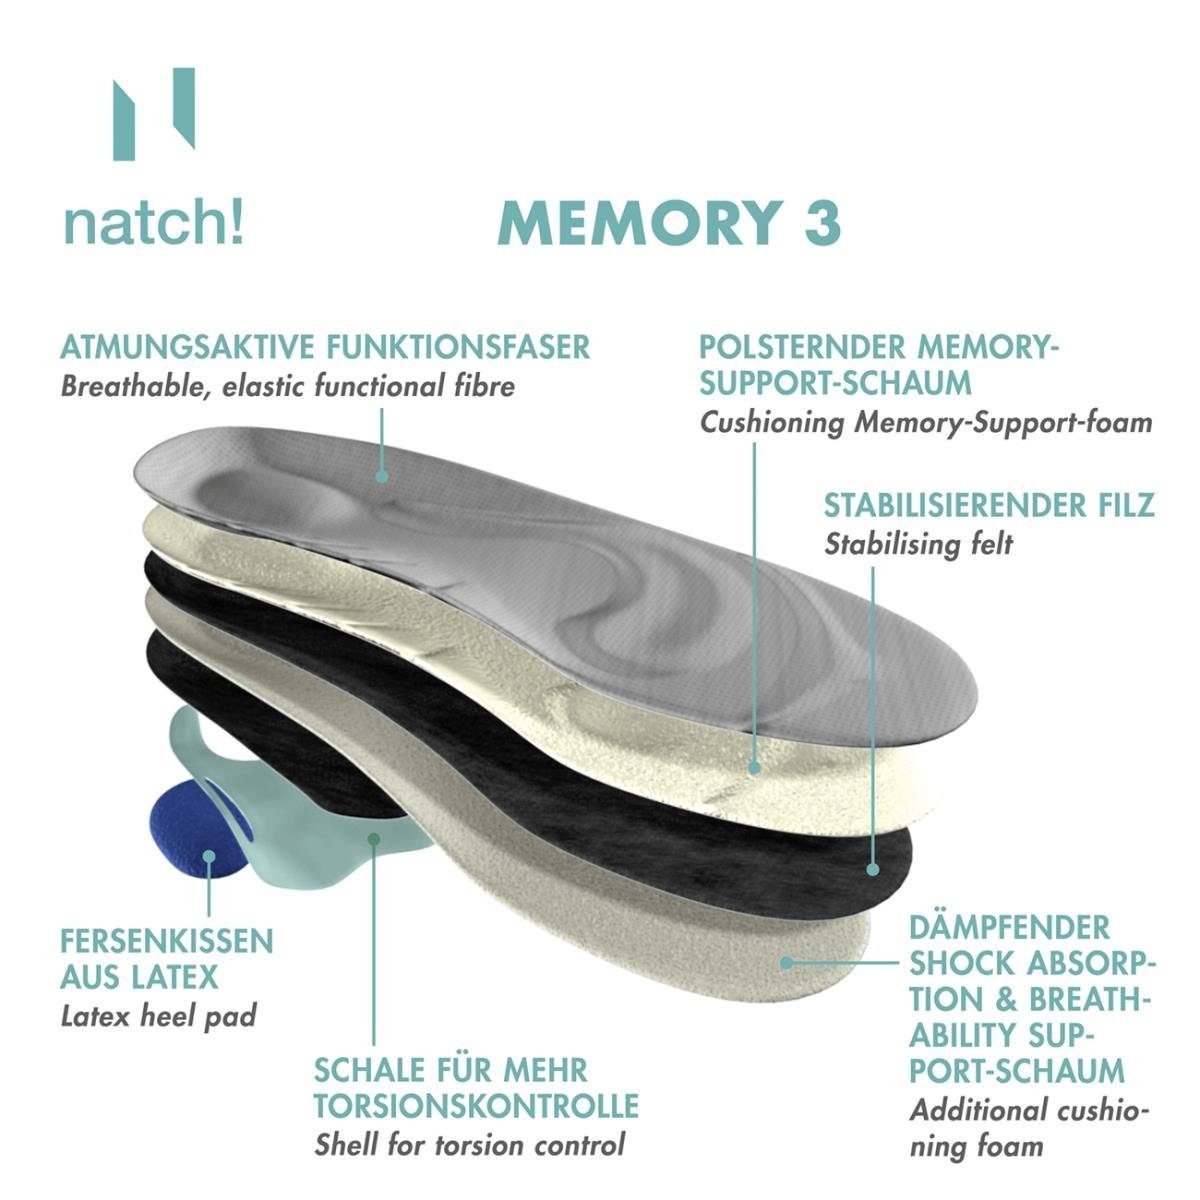 Freizeitschuhe Fußbett Wander- Memory-Support-Schaum Sport-, MEMORY anatomisch extrem Fußbetteinlage leichtes Natch! - mit 3 für geformtes, supersoftem und